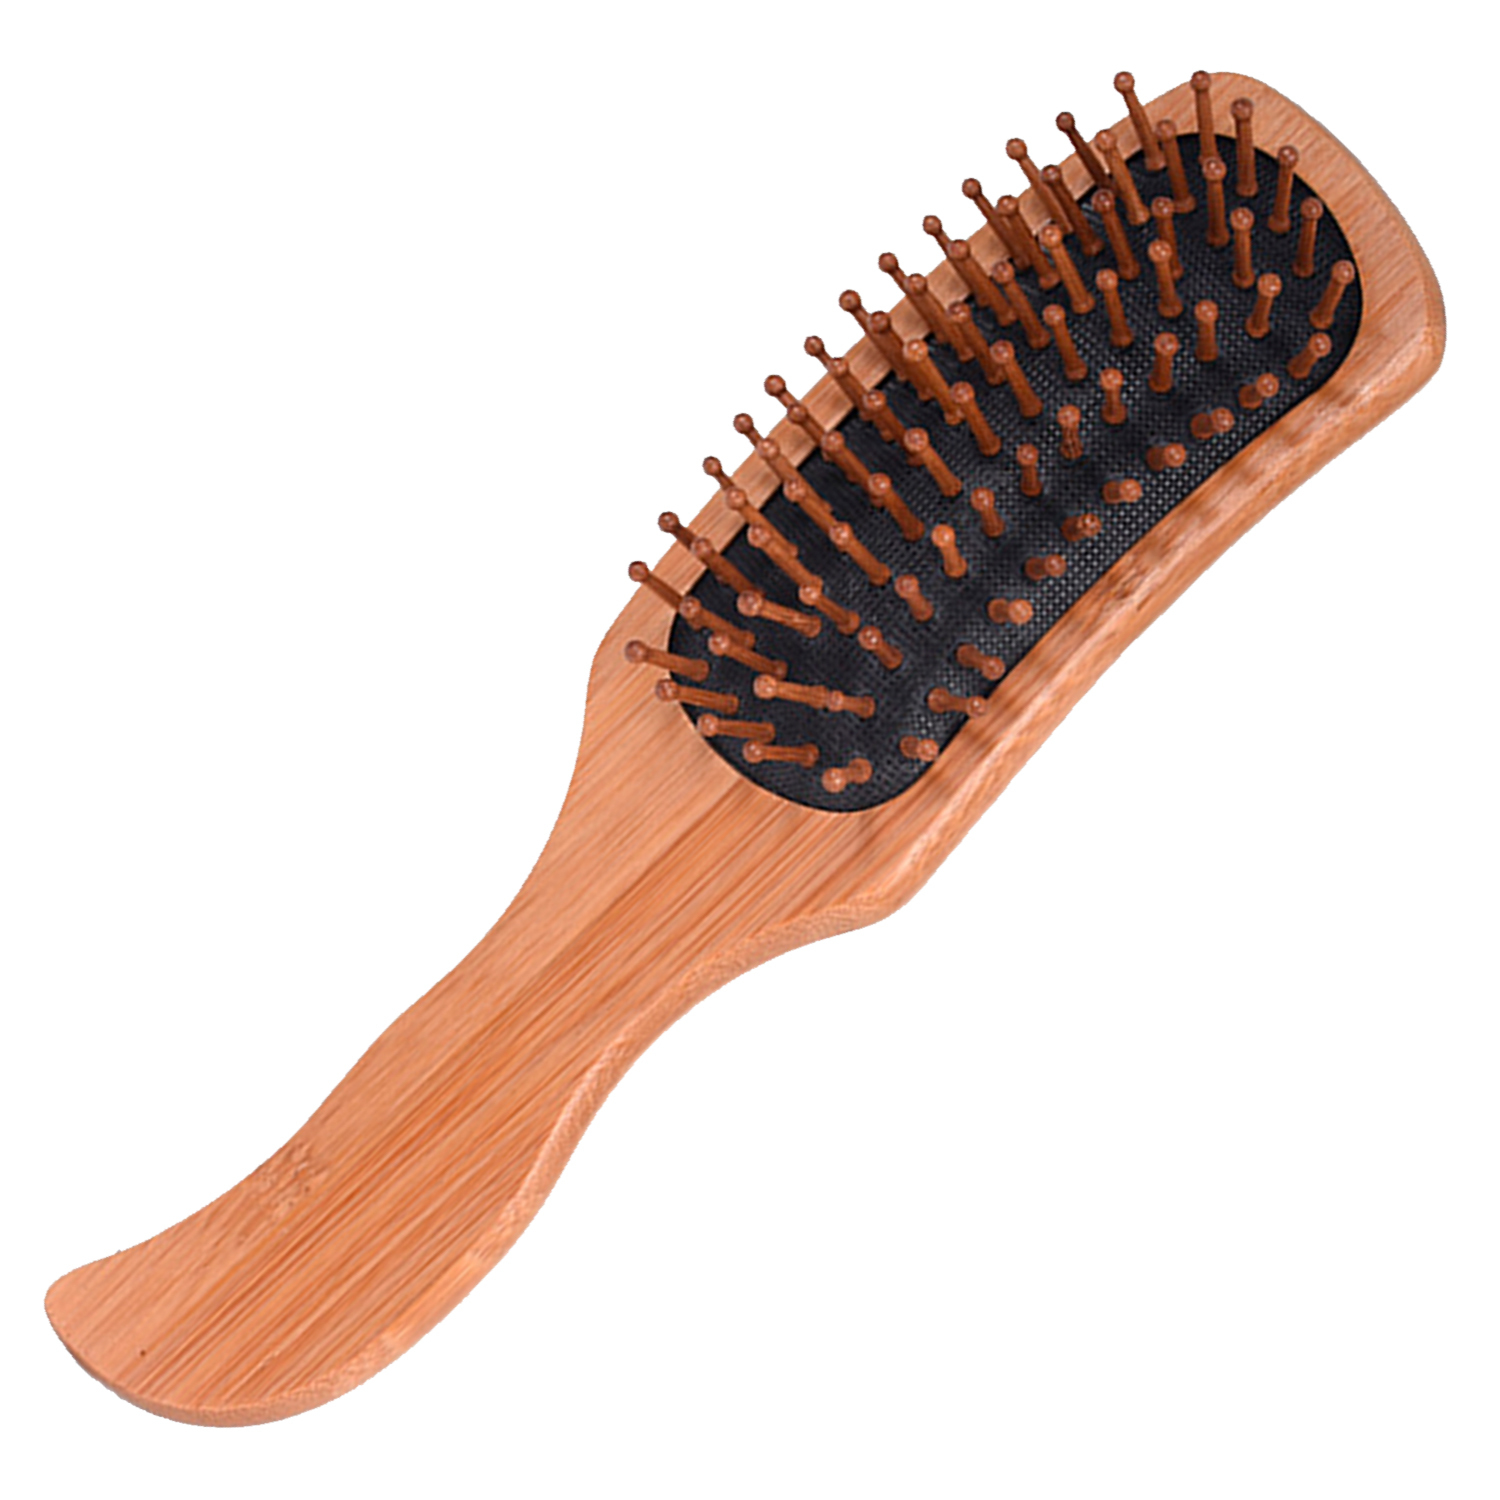 Массажная щетка для волос VenusShape расческа из натурального дерева, 25x8,5 см щетка массажная из натурального дерева малая